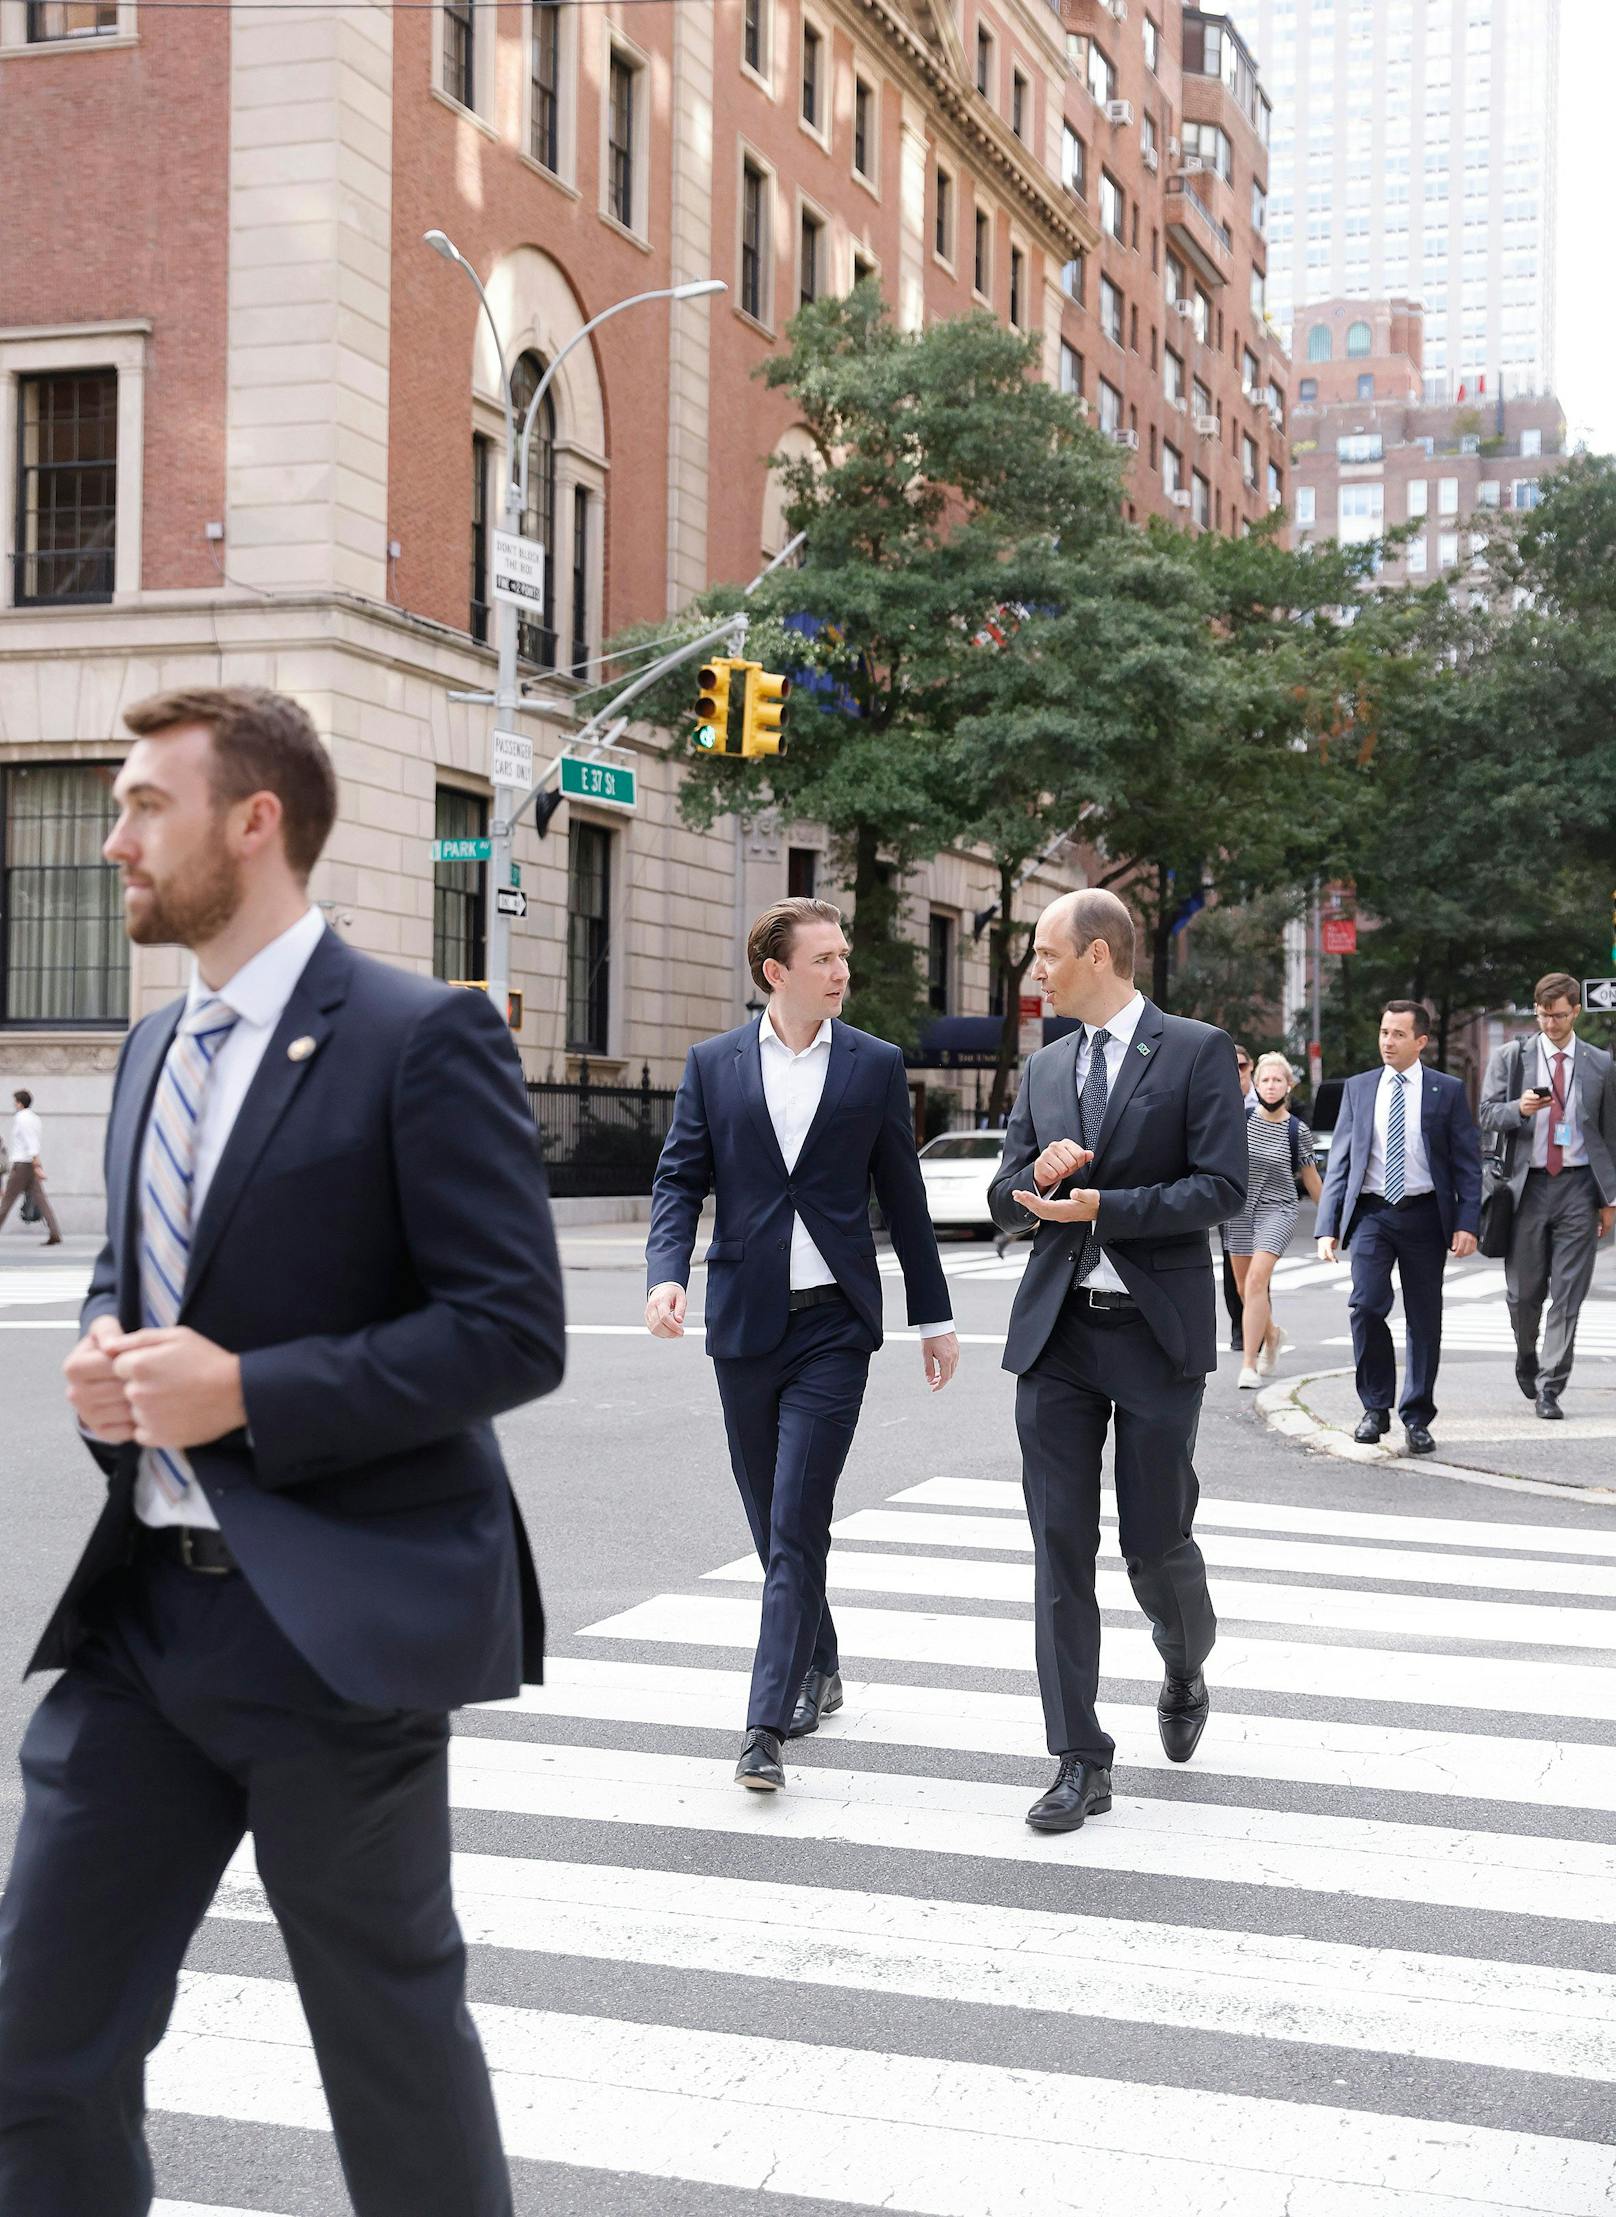 Bewacht vom Secret Service ging es durch die Straßen Manhattans.